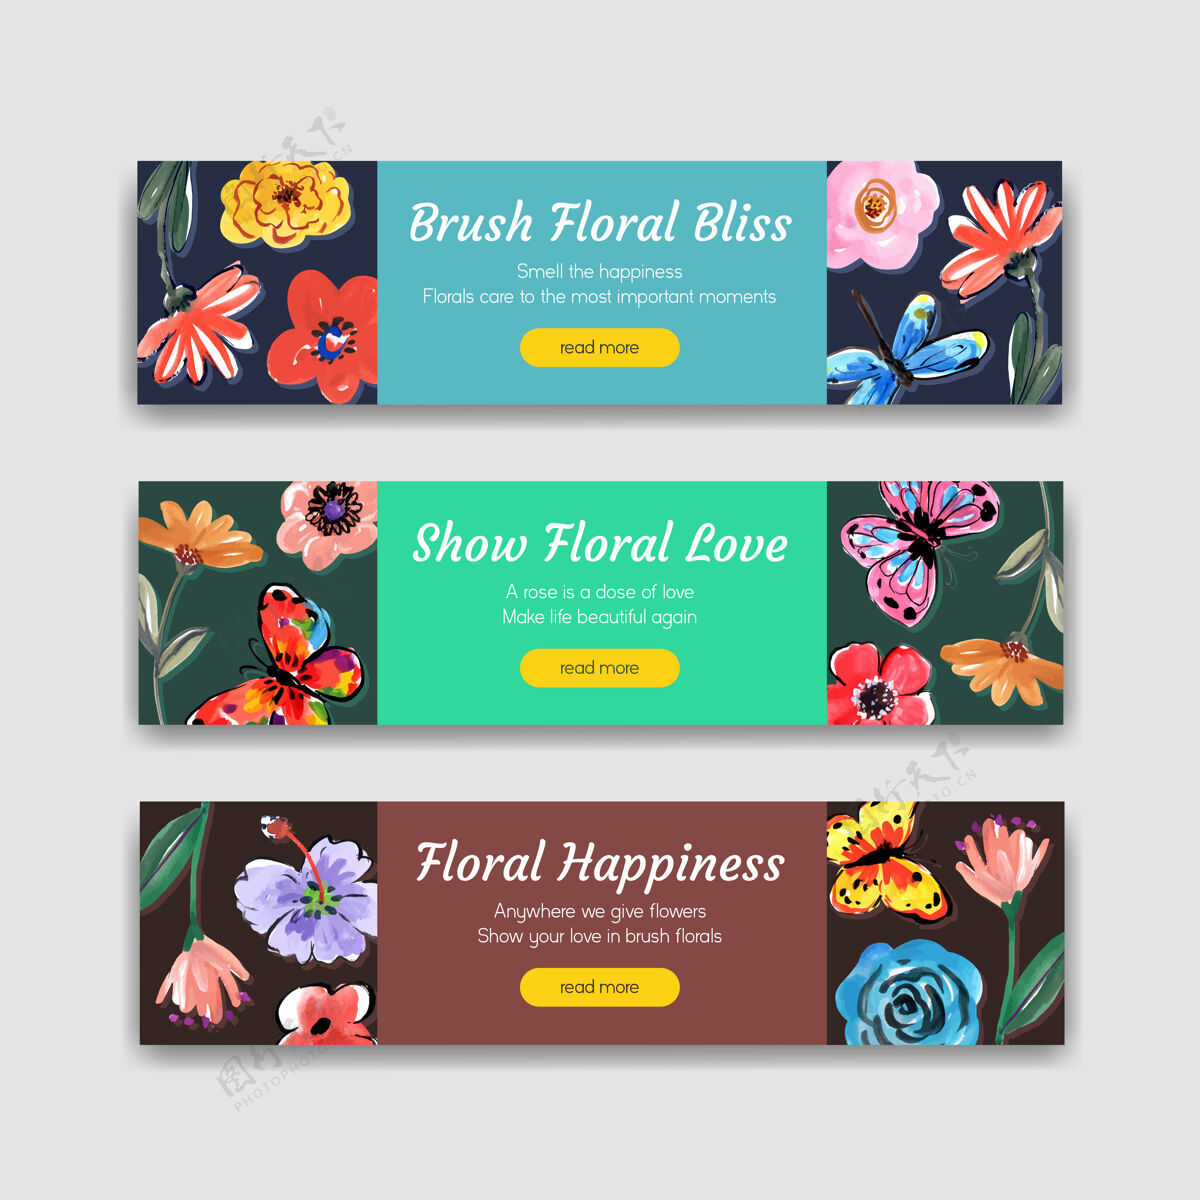 线条横幅模板与刷子花卉概念设计广告和营销水彩花卉花卉水彩